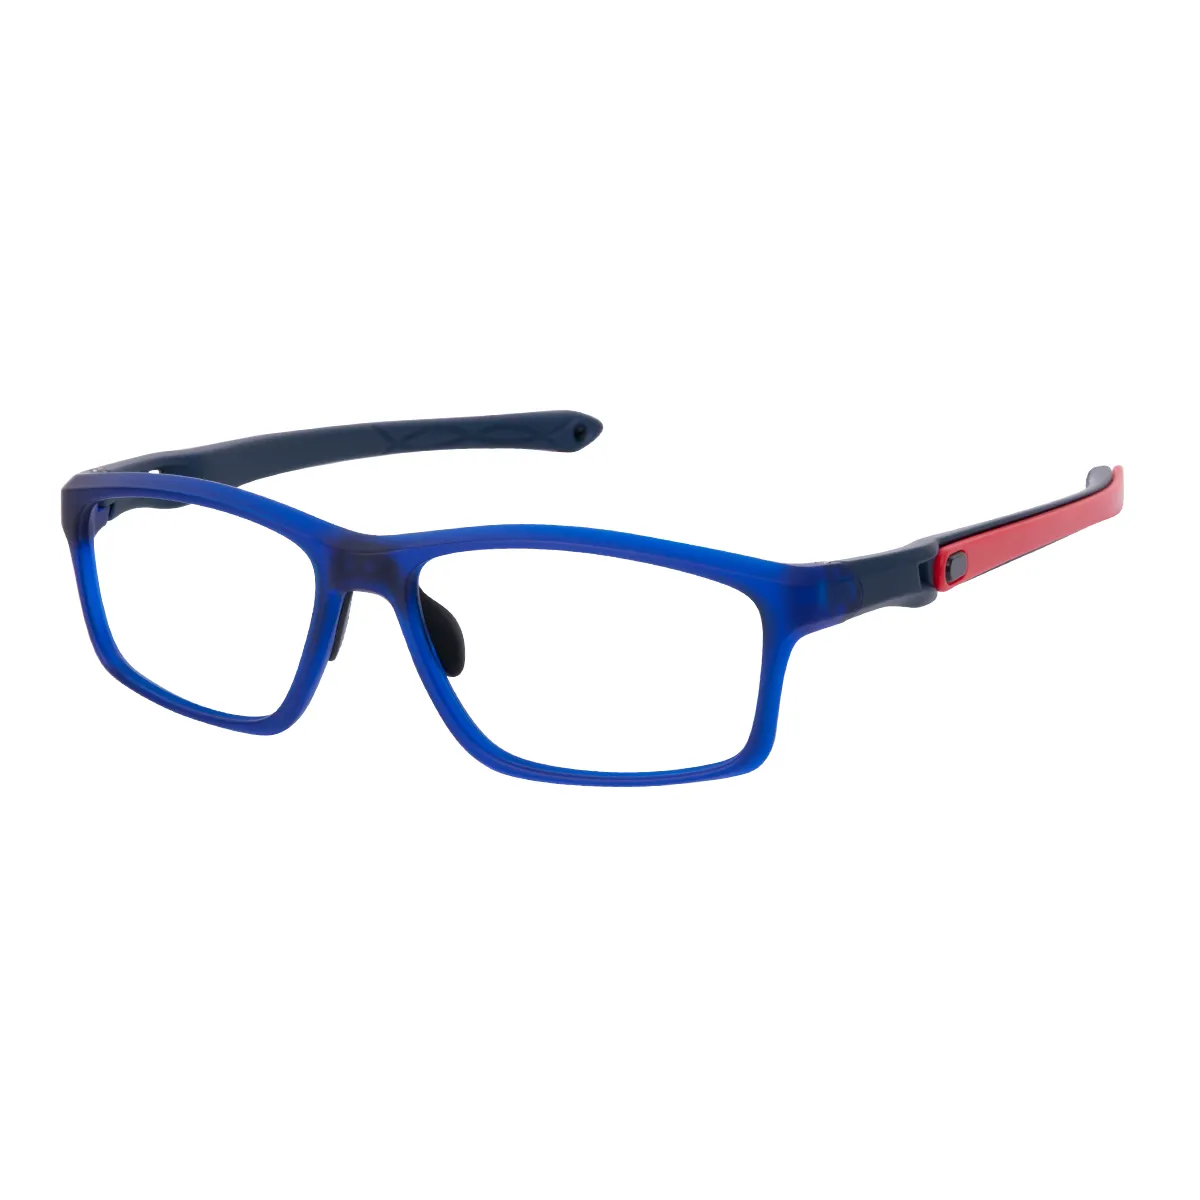 Kellan - Rectangle Blue-Red Glasses for Men